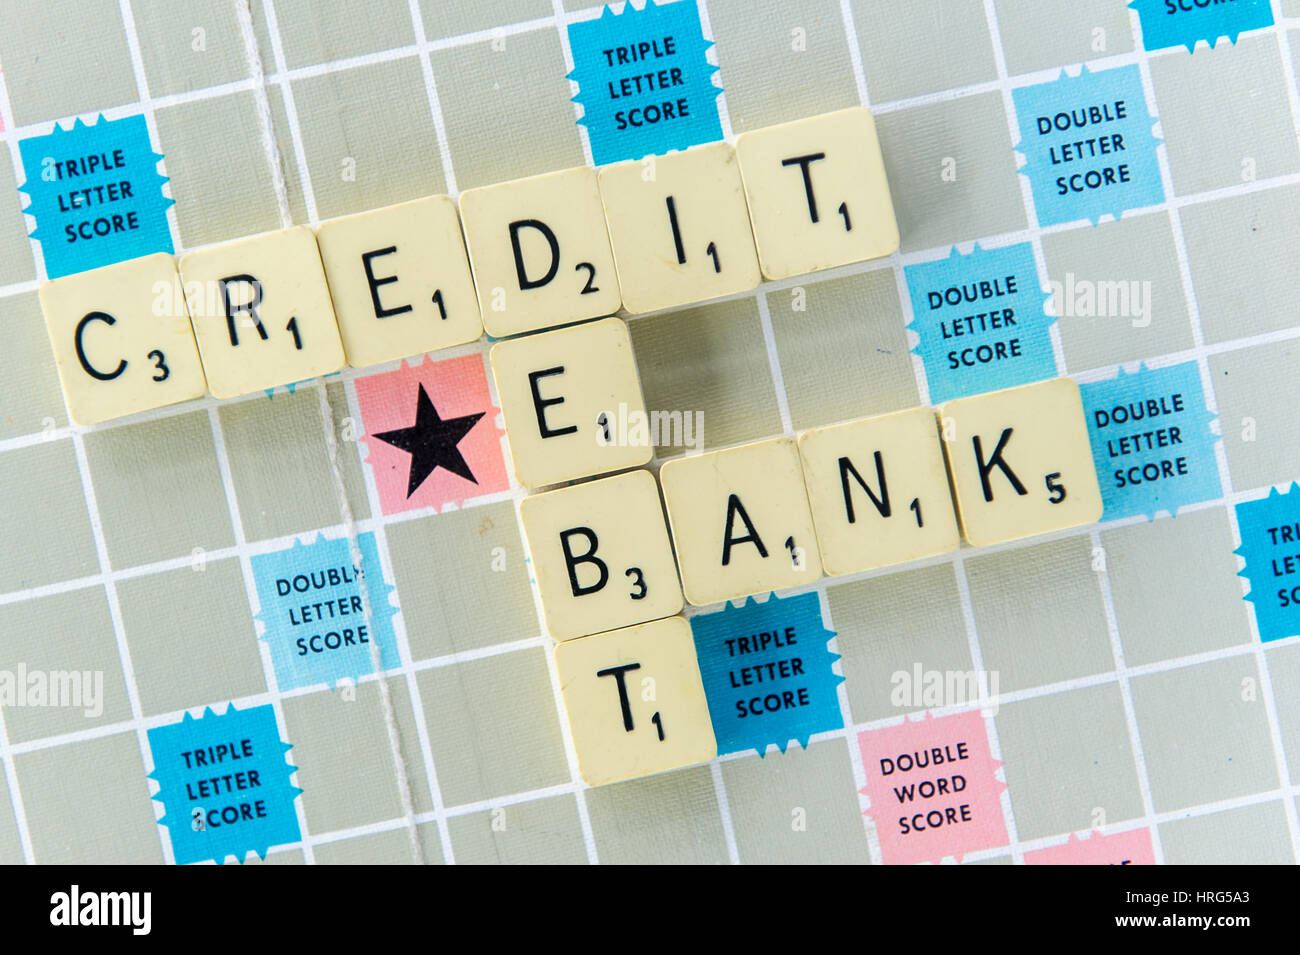 Wörter-Kredite, Schulden und Bank dargelegt auf einem Scrabble-Brett als Finanz- oder Bank-Konzept. Stockfoto